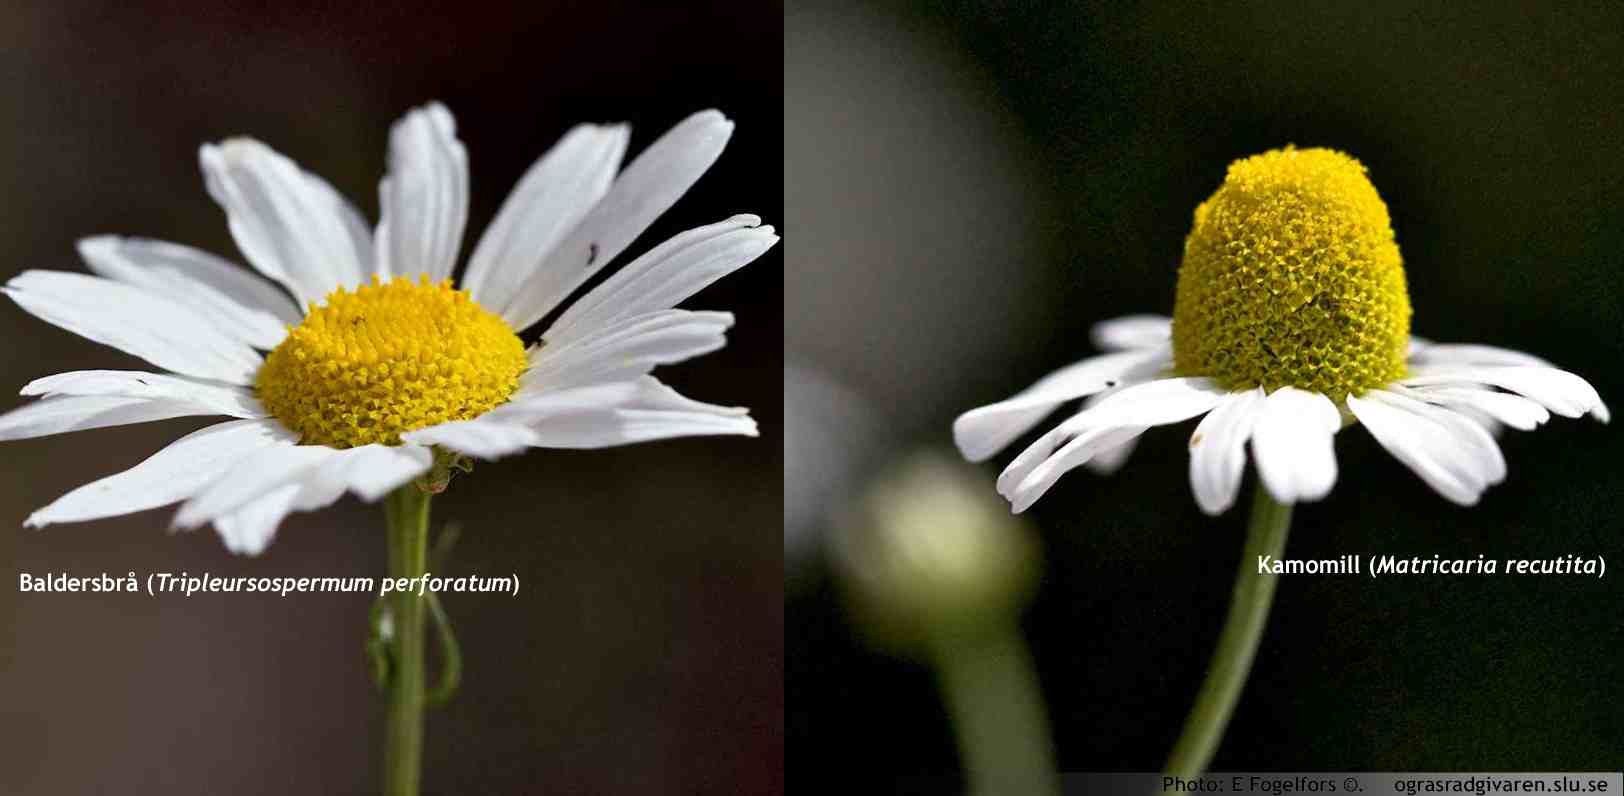 Blomkorg, jämförelse baldersbrå (platt och kompakt) och kamomill (toppig och ihålig).